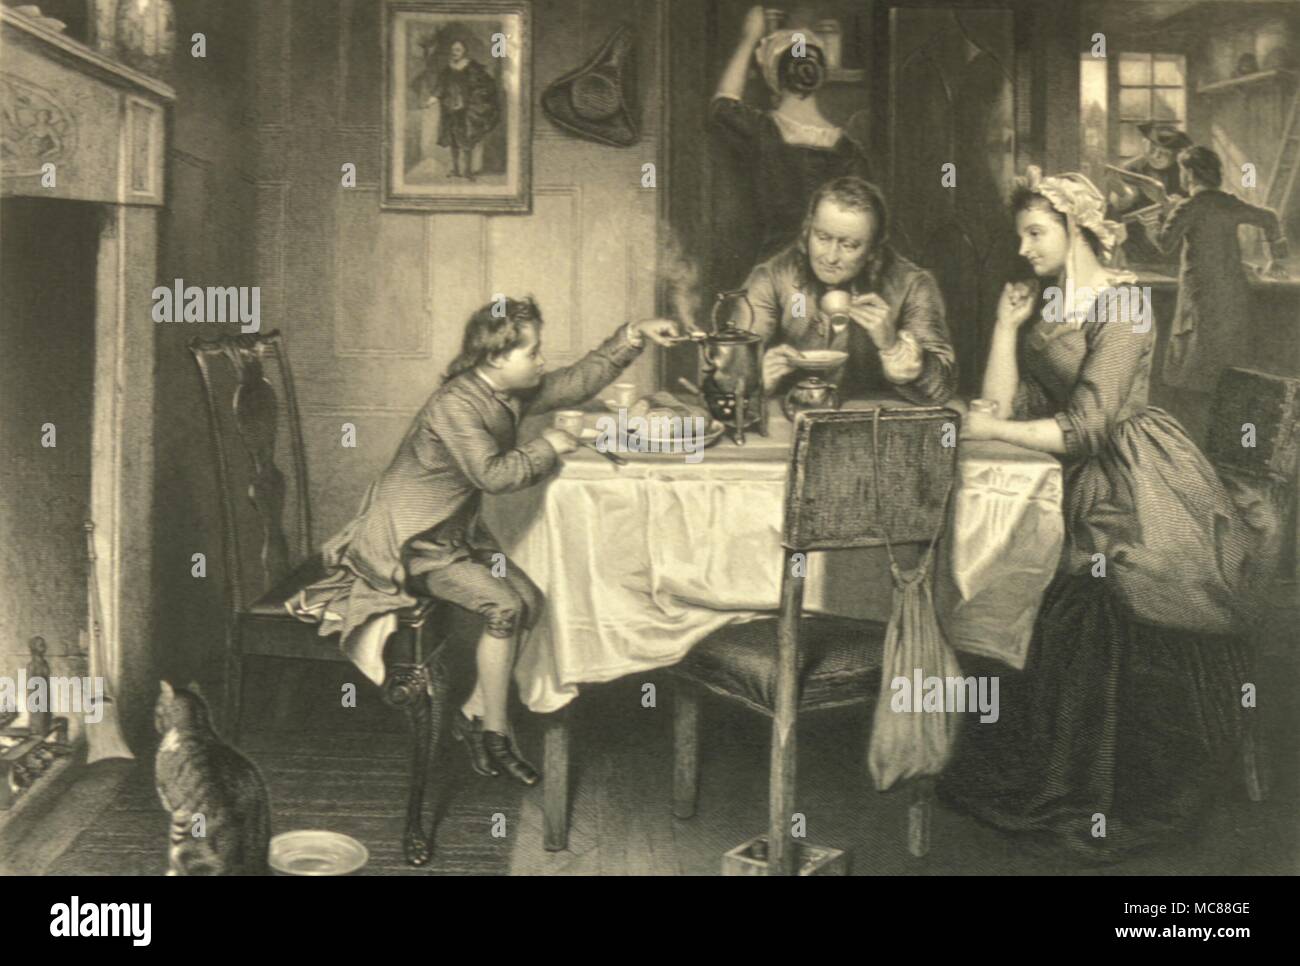 Historia - El joven británico James Watt experimentando con vapor durante la comida familiar. Grabado en madera de alrededor de 1870. Foto de stock